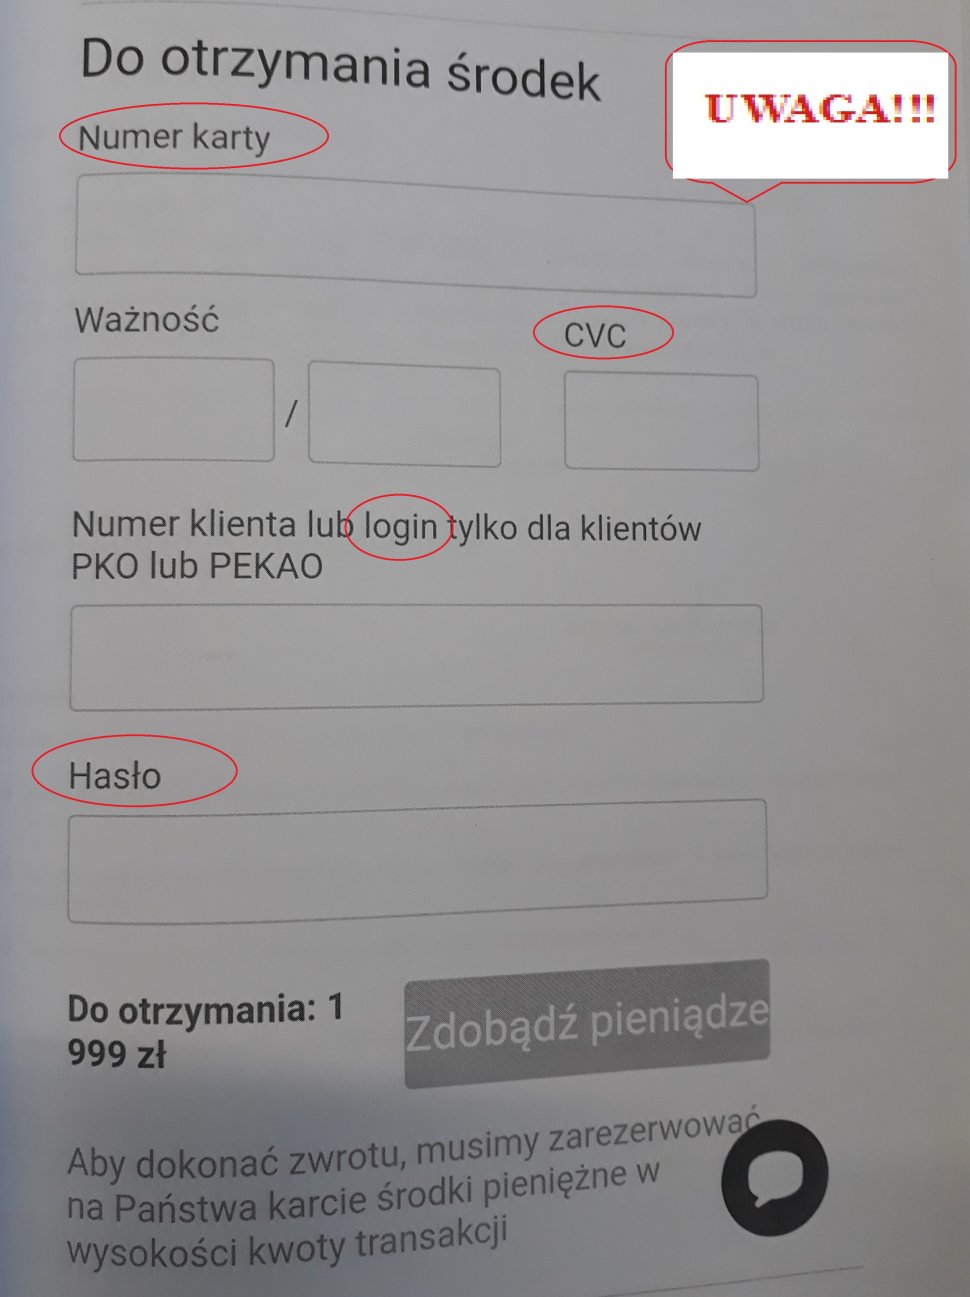 Fotografia przedstawia fałszywy formularz, w którym sprzedający dany przedmiot, ma podać numer karty, CCV, login i hasło do konta. 